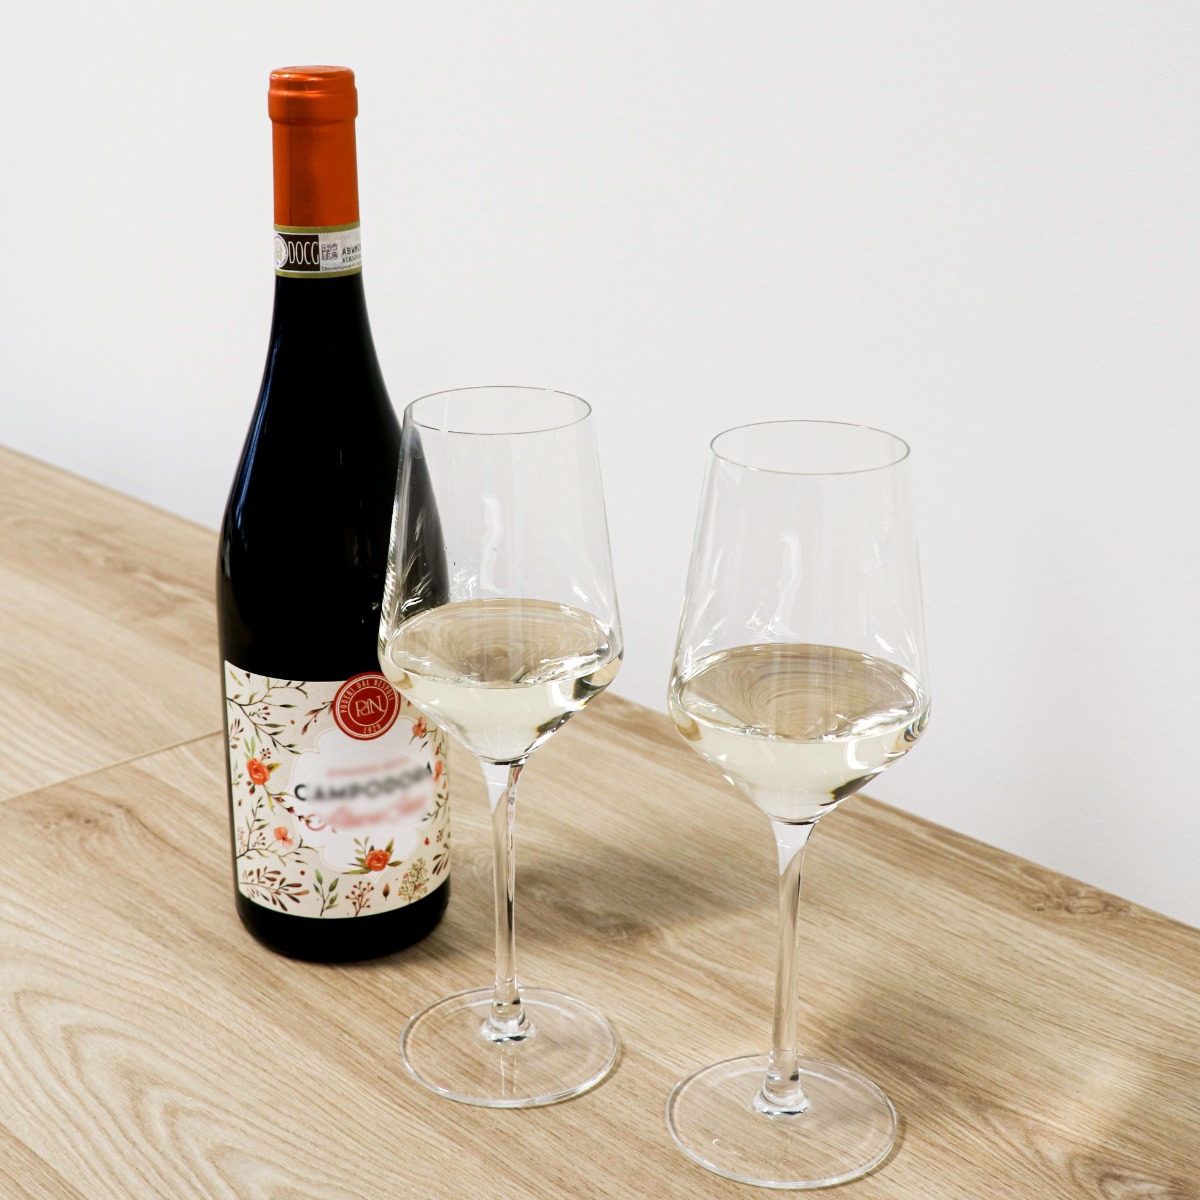 Piket Monica micro Vinata wijnglazen kopen? | Wijnklimaatkast.nl